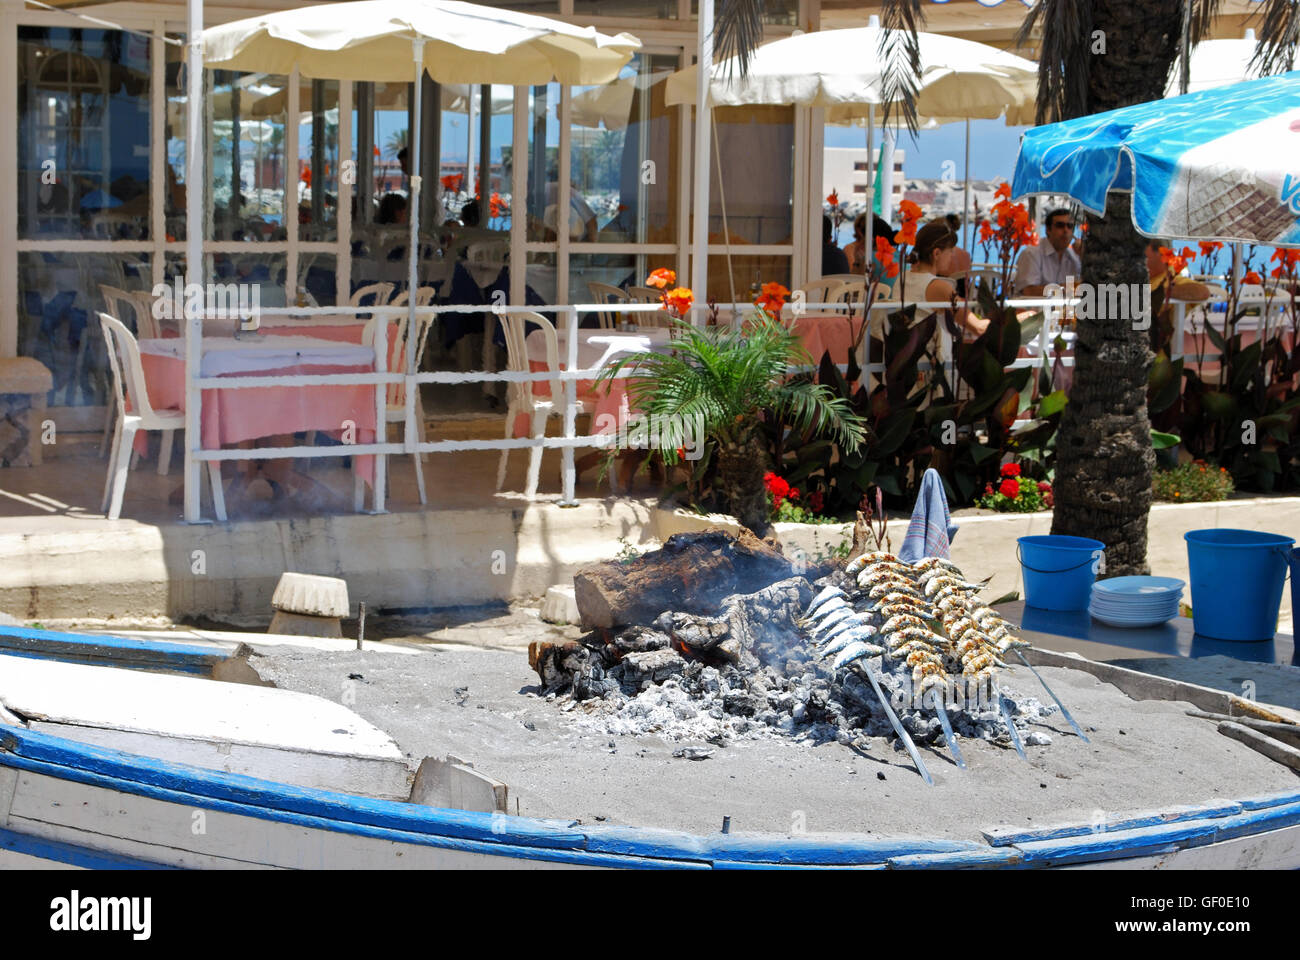 La cuisson des sardines dans un bateau rempli de sable à l'extérieur un chiringuito sur la plage, Fuengirola, province de Malaga, Andalousie, espagne. Banque D'Images